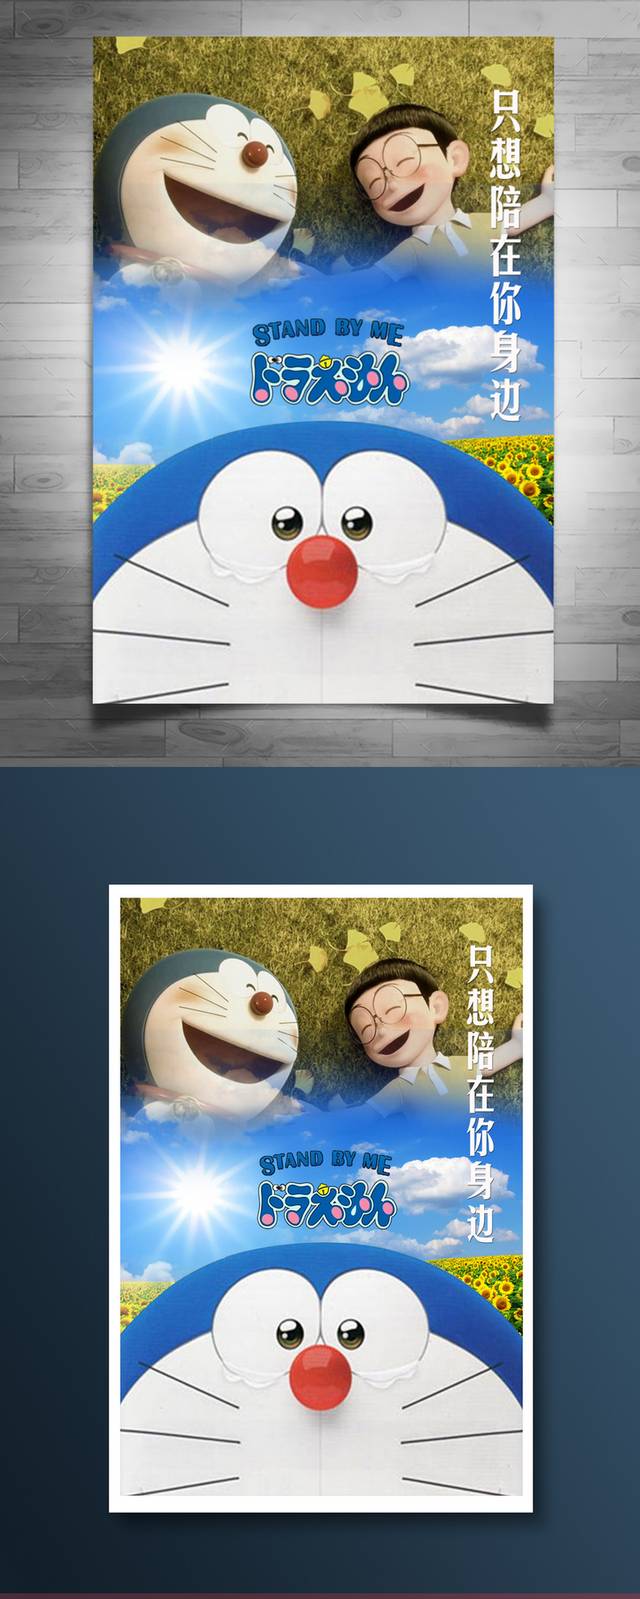 哆啦A梦电影宣传海报